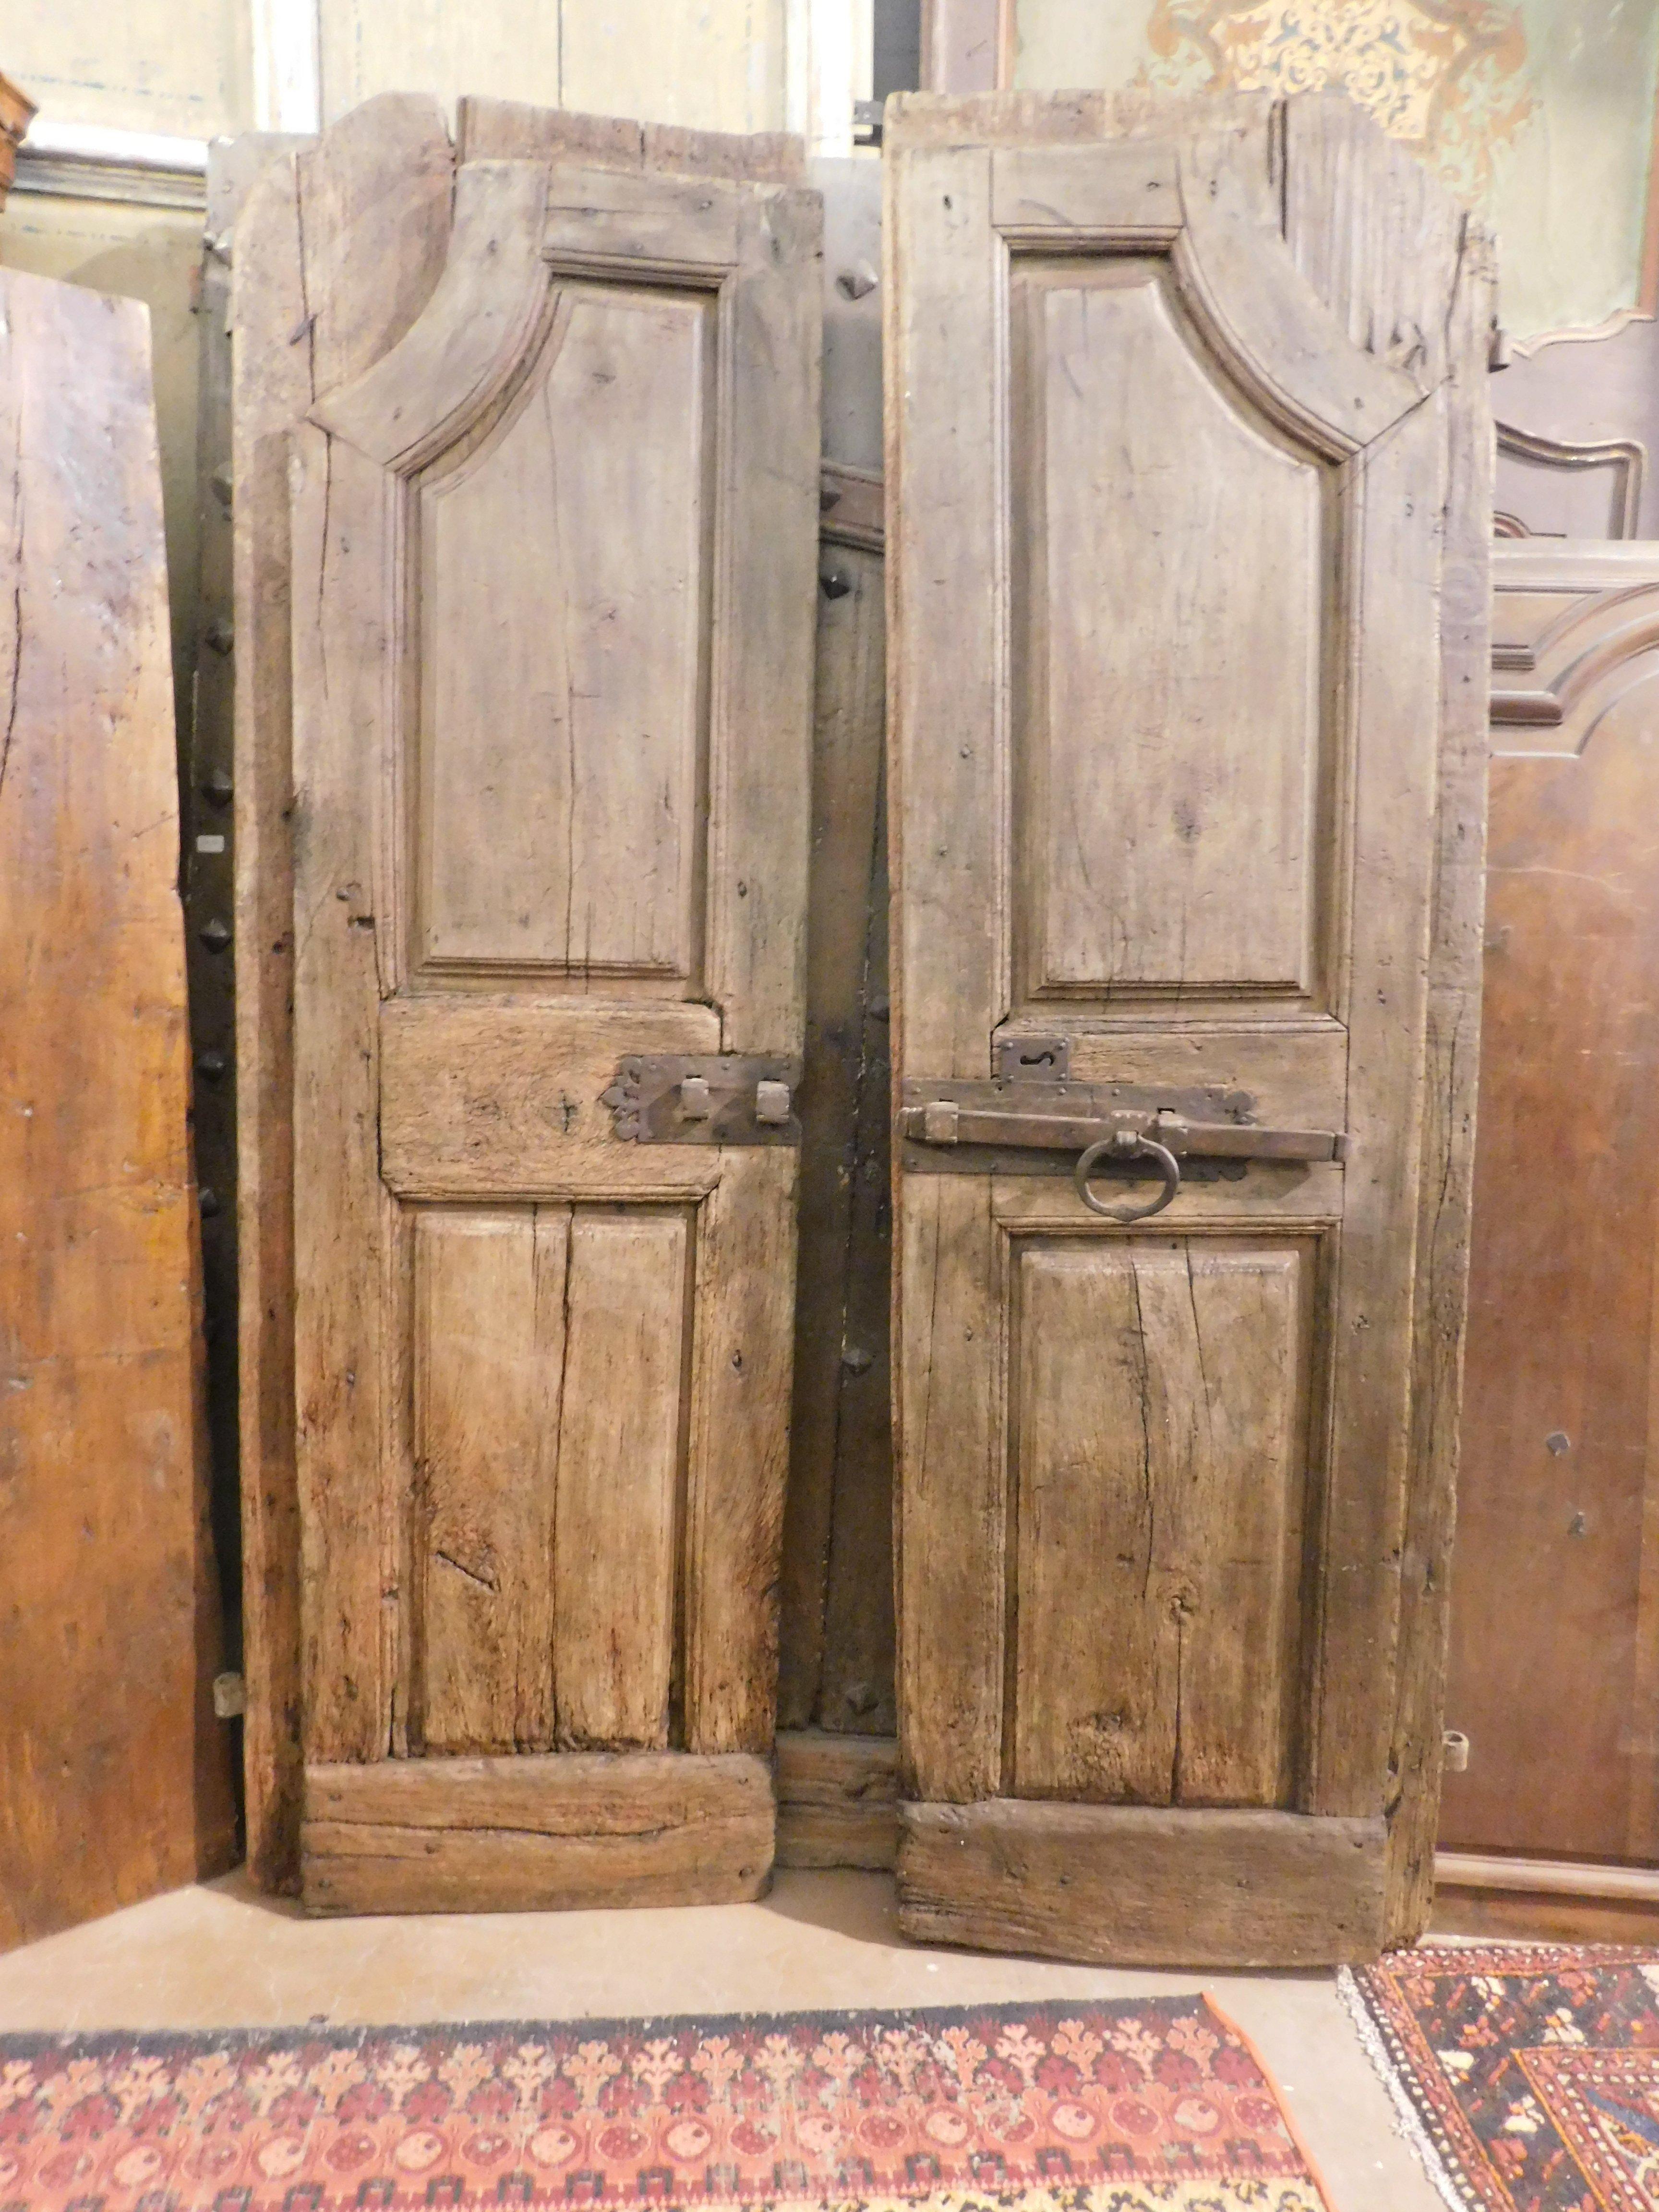 Ancienne porte cintrée en noyer massif, sculptée à la main avec une forme arquée et des panneaux molletonnés, construite au XVIIIe siècle pour une maison du nord de l'Italie (Piémont), possède un large rebord car elle s'ouvrait en poussant et